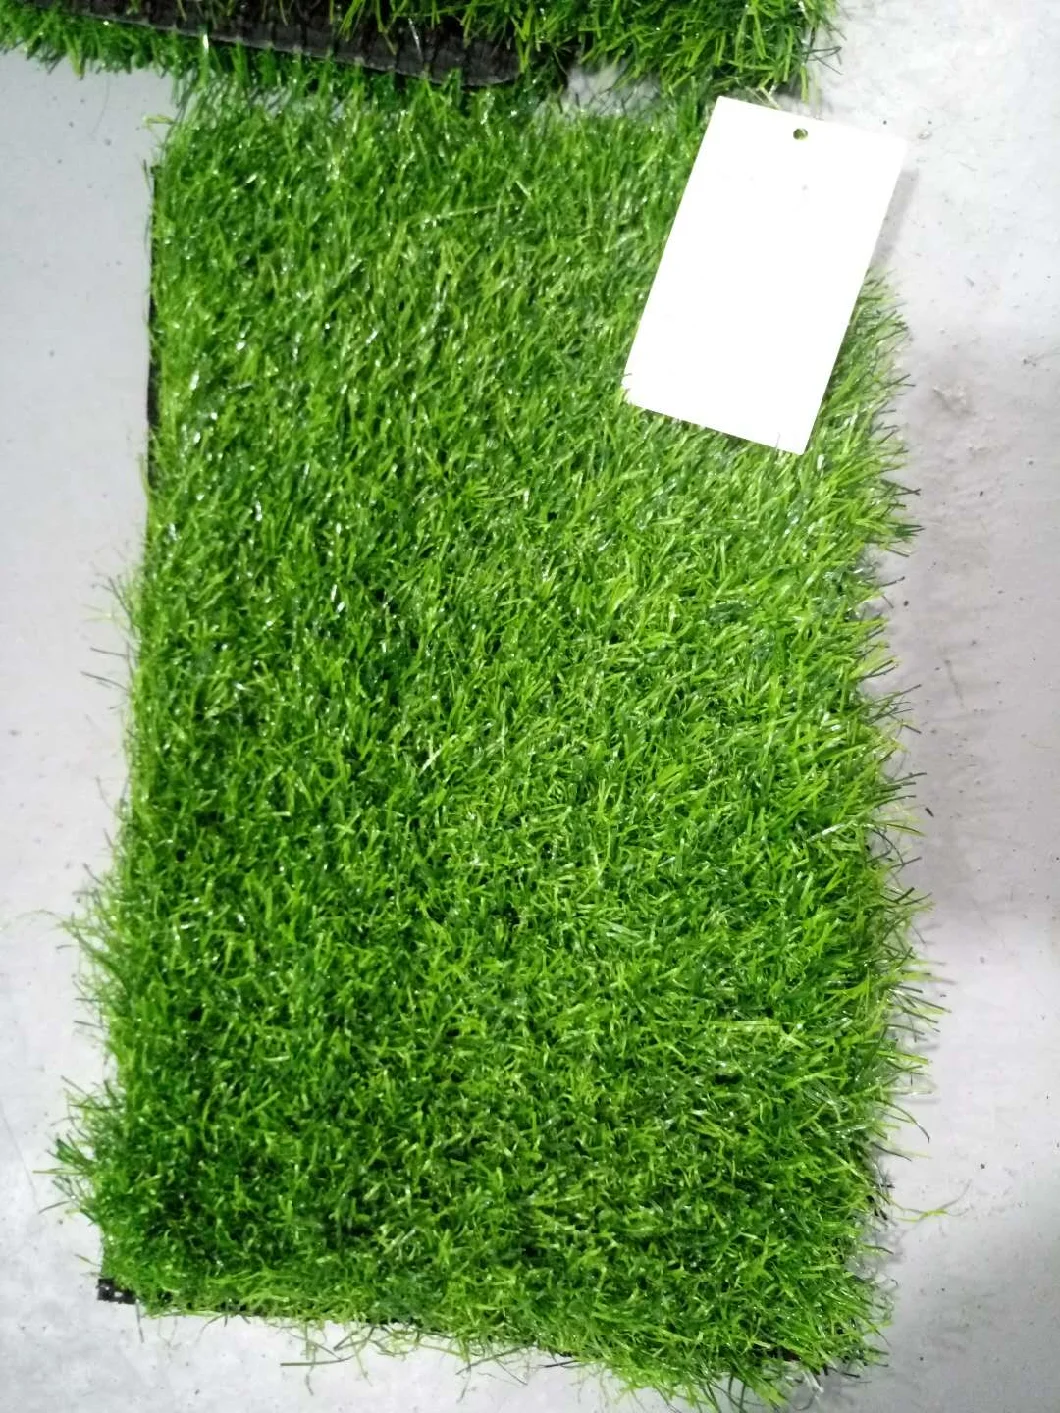 Grass Artificial China Supplier Green Football Field Grass for Soccer